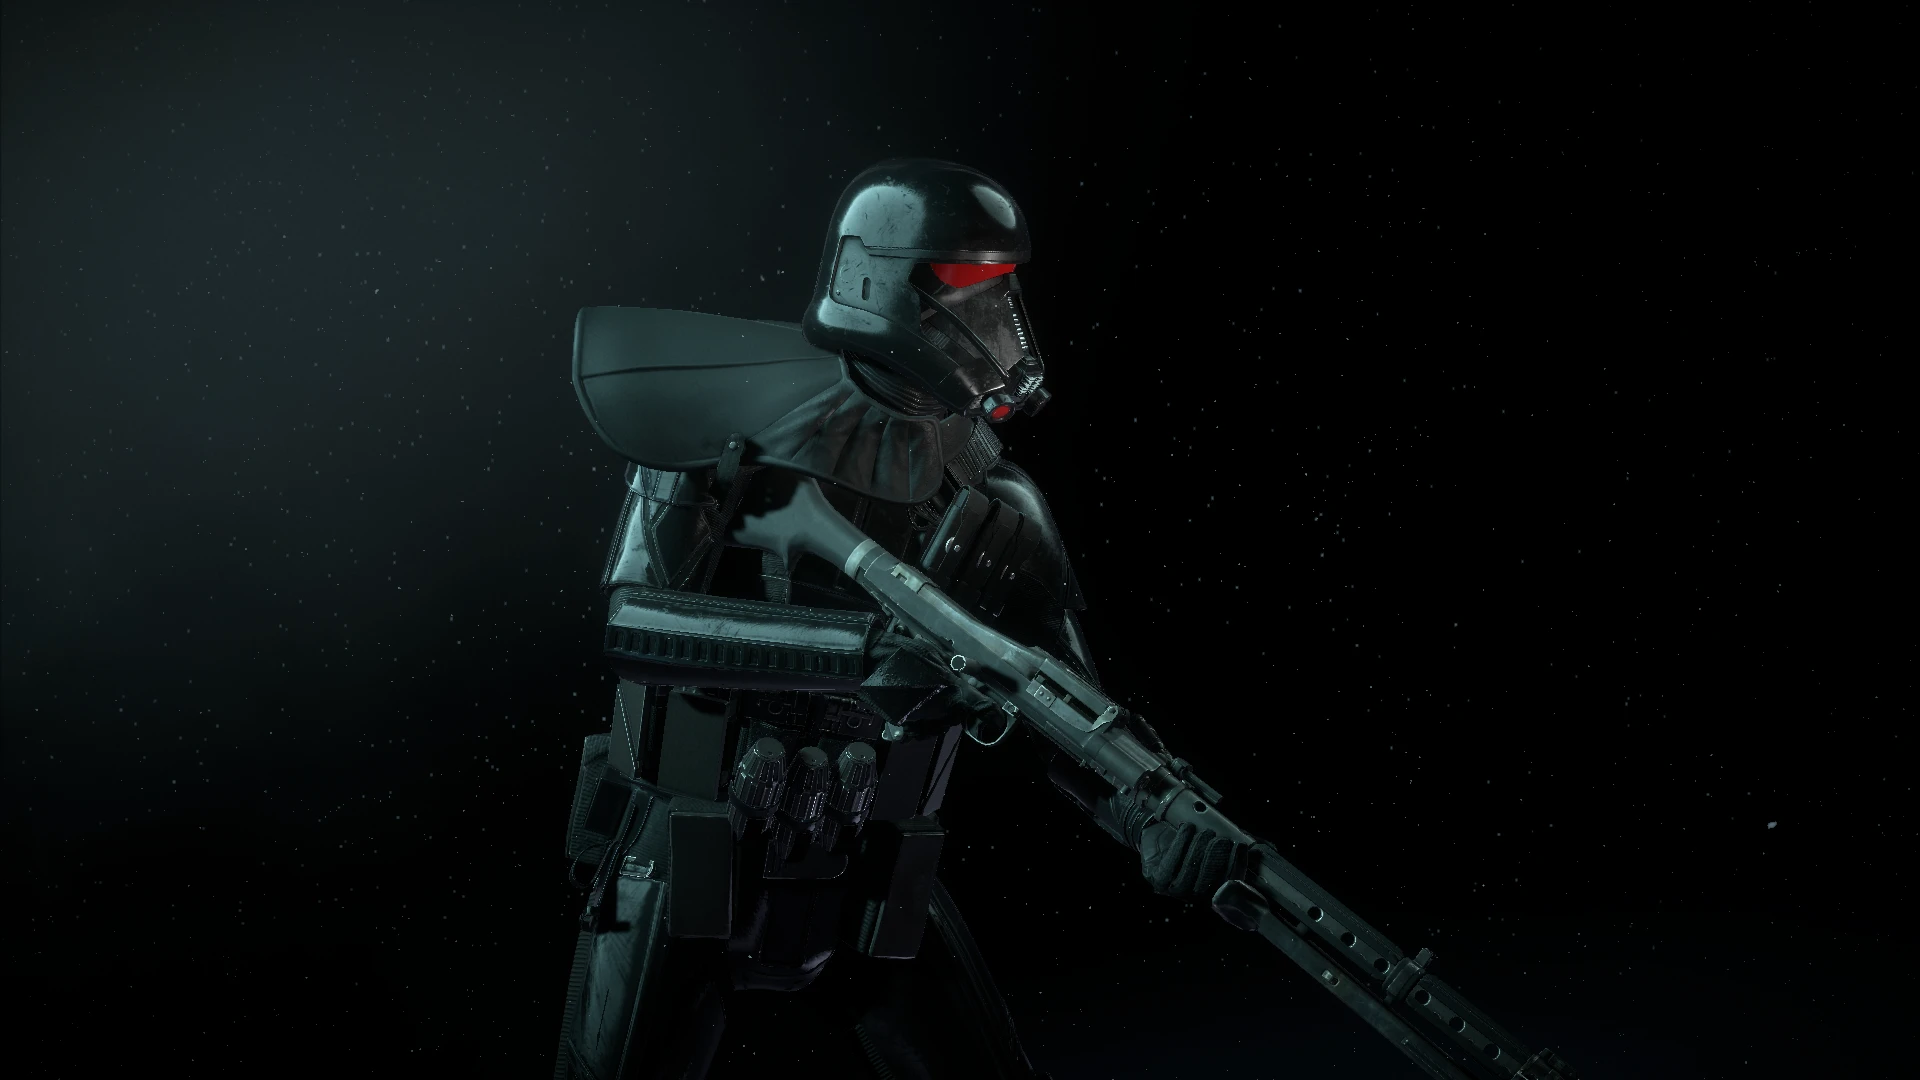 battlefront 2 death trooper